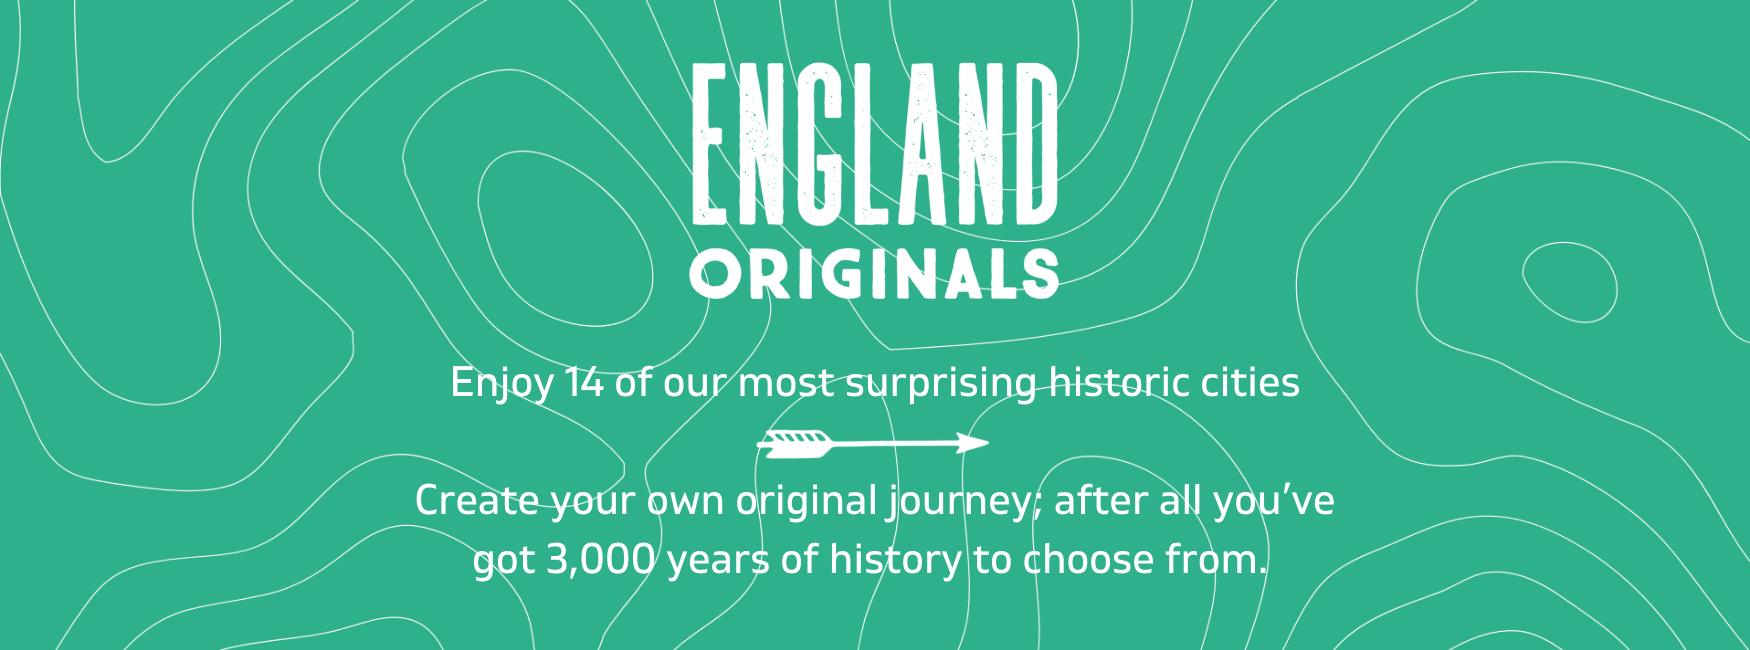 England Originals